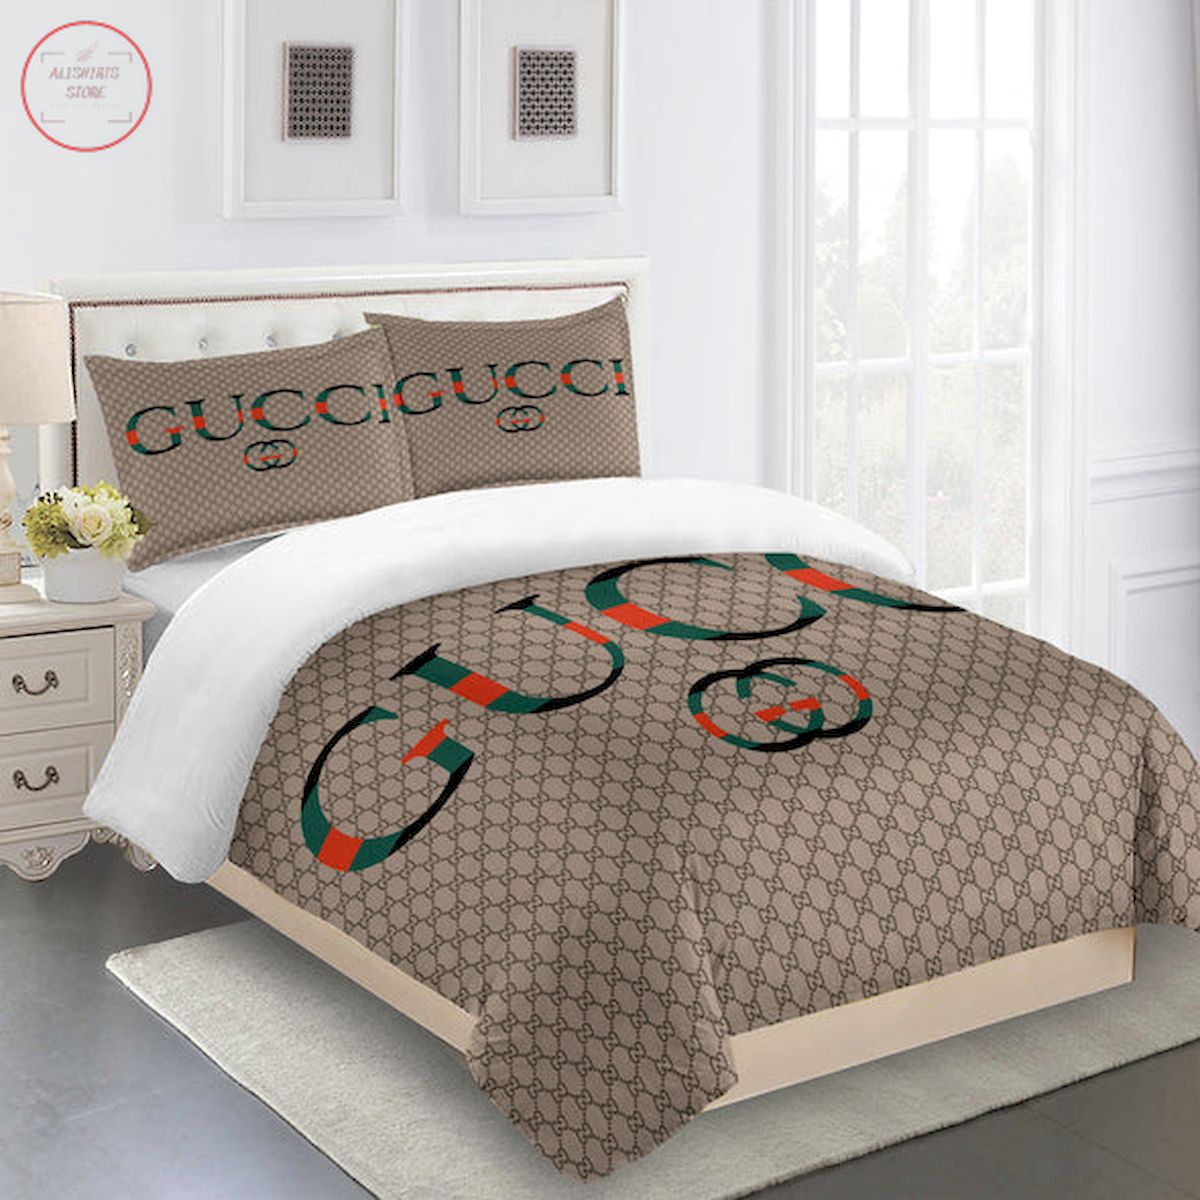 Gucci bedding set dark beige Luxury bed sheets